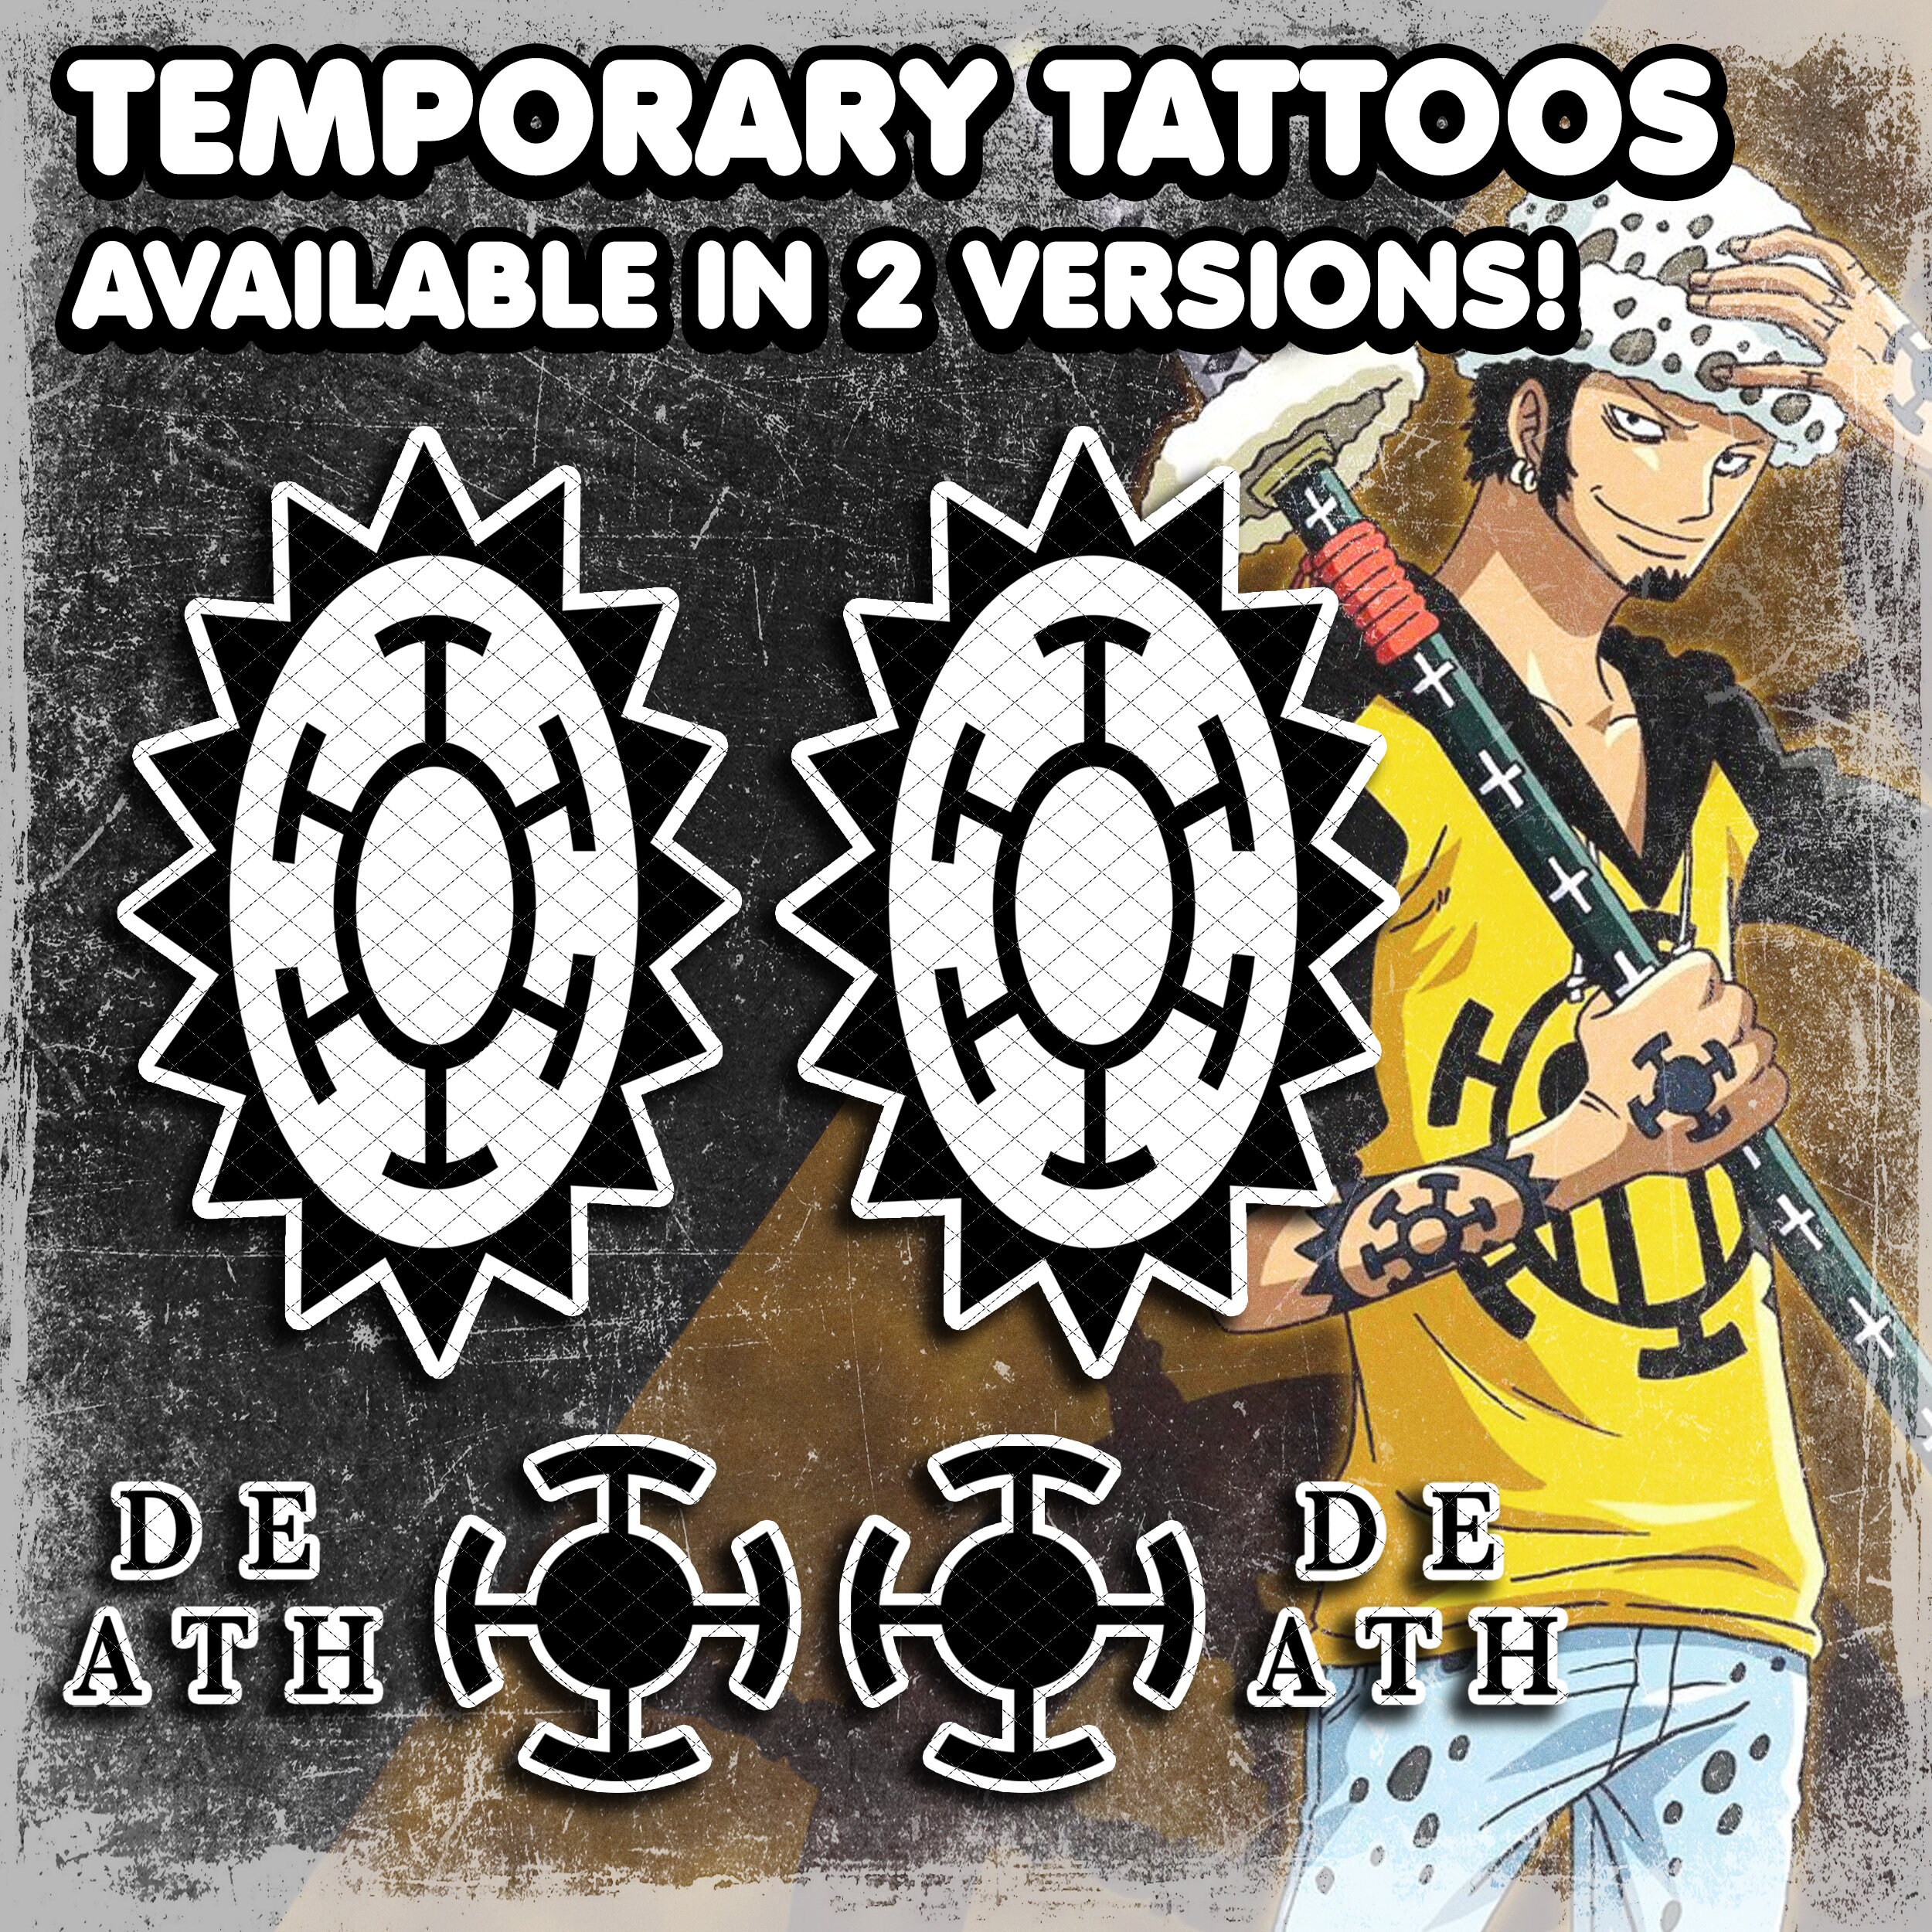  2 Pcs Nami tattoo cosplay Animation Cartoon logo tatoo tattoo  Sticker (Nami) : Beauty & Personal Care